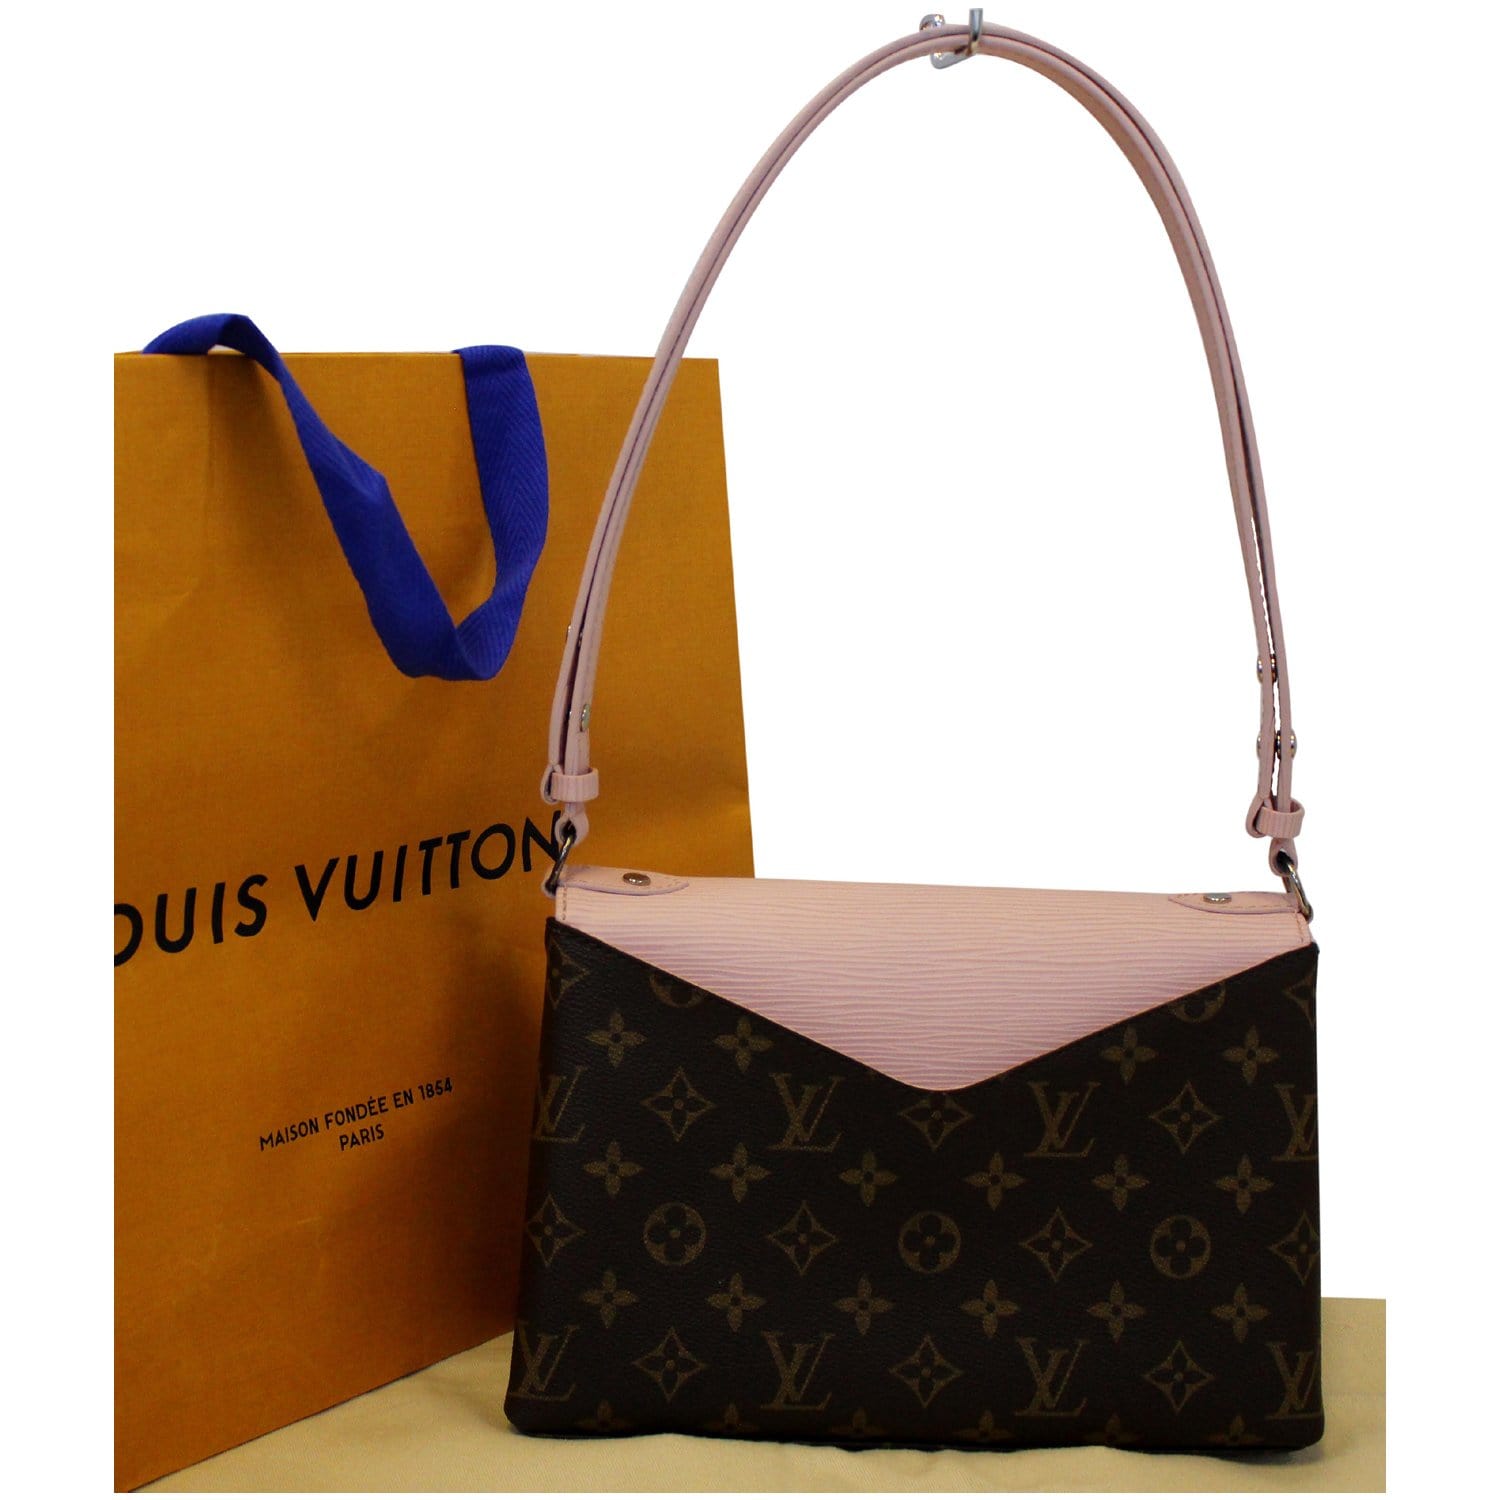 Gorgeous Louis Vuitton St Michel Bag, combination of Monogram